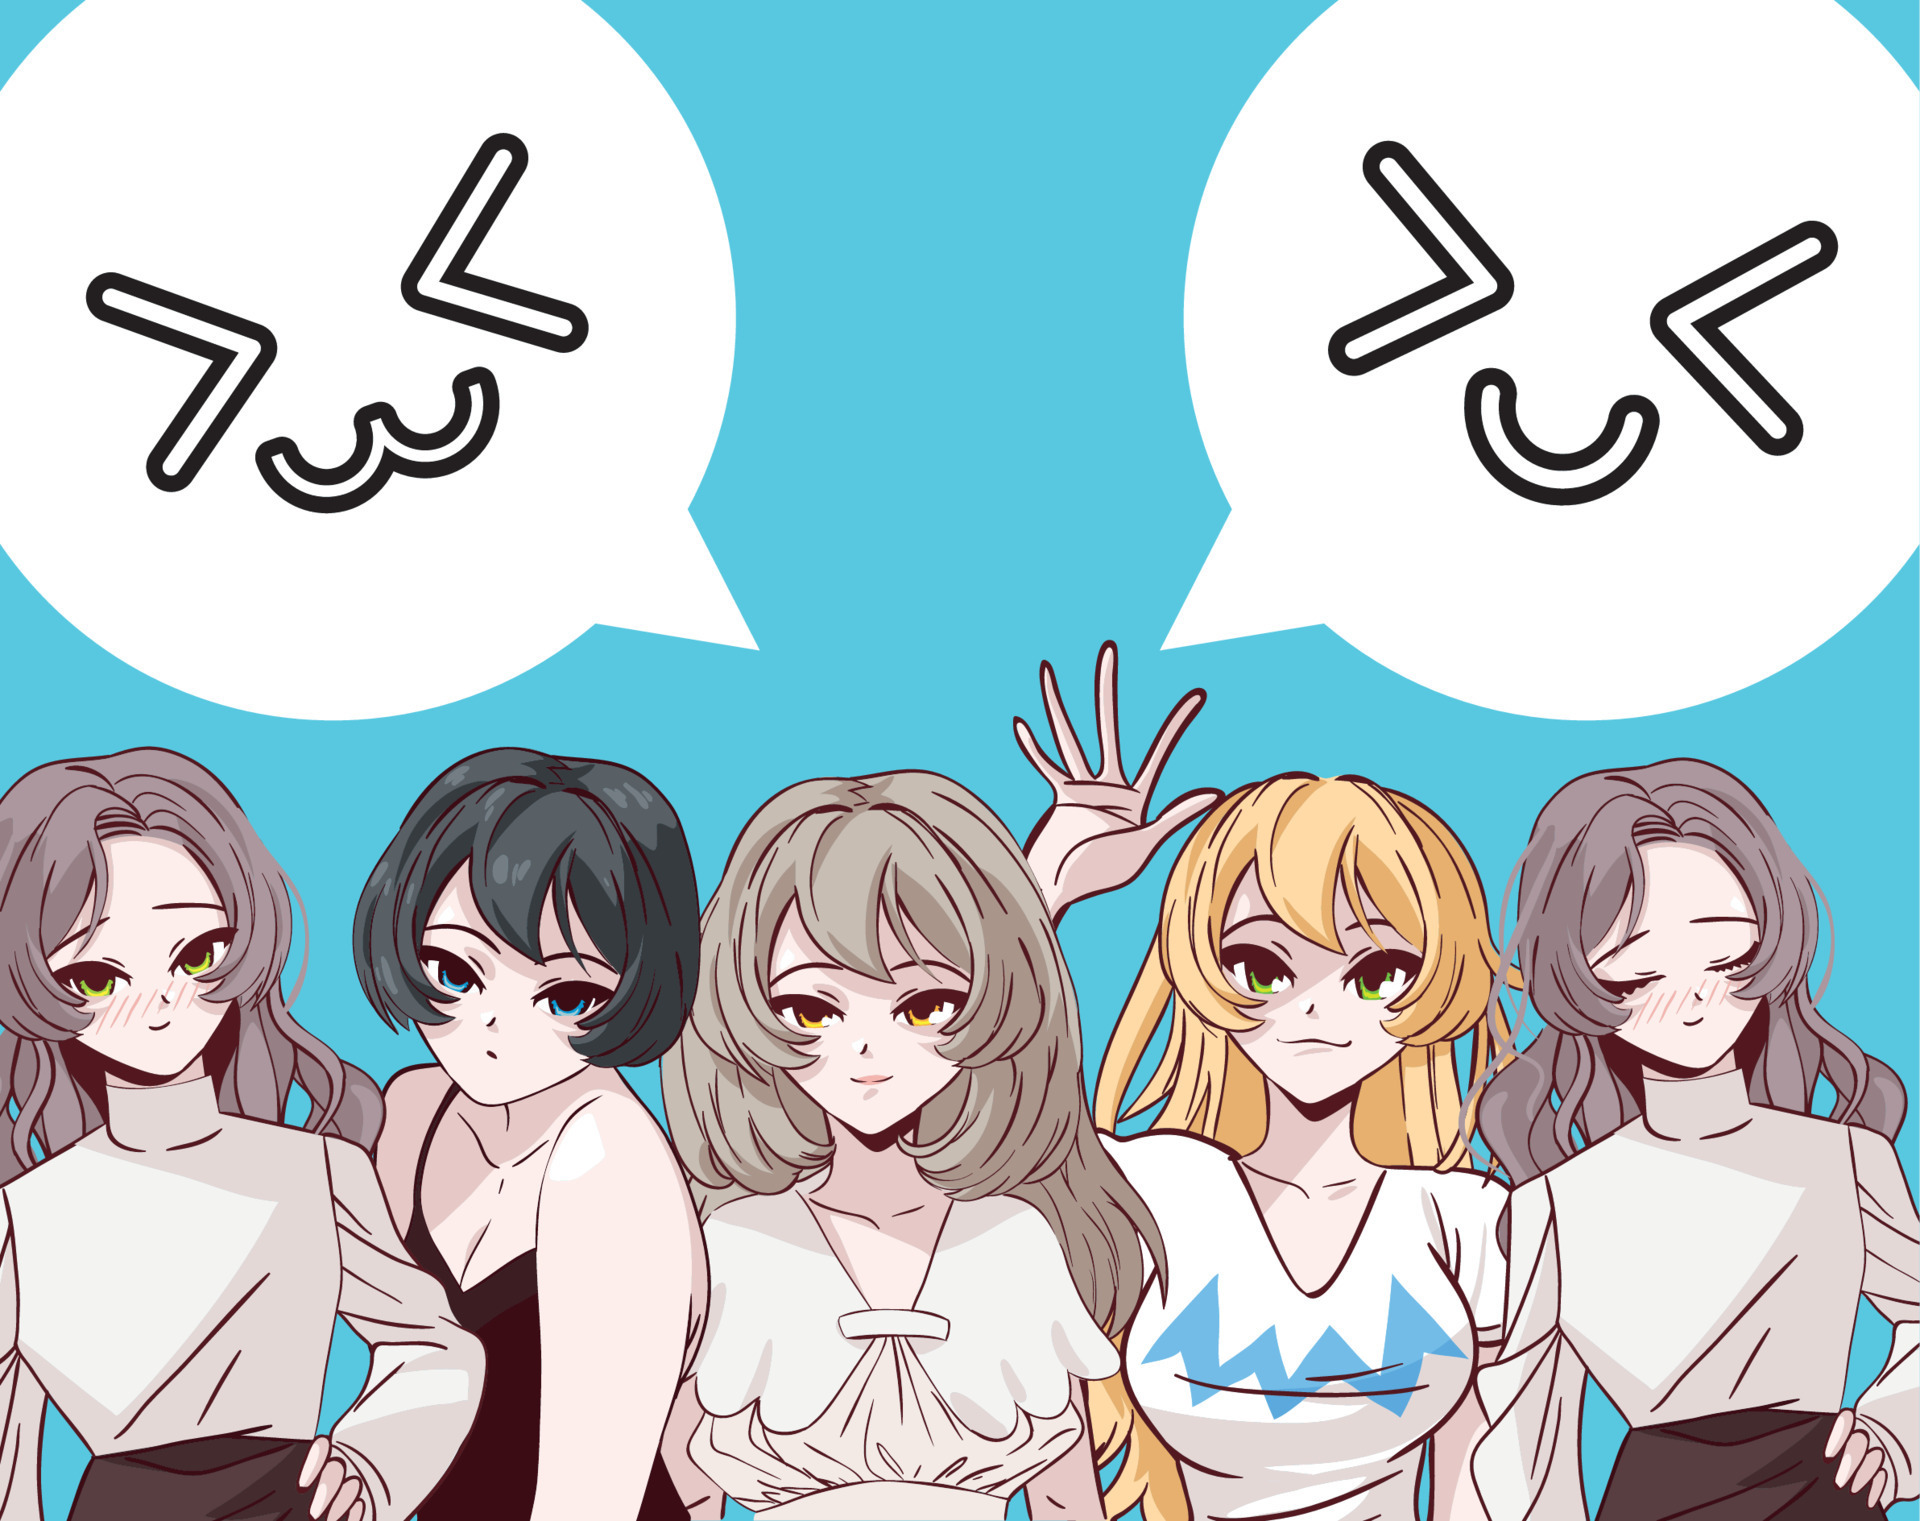 Grupo Do Perfil Das Jovens Mulheres Do Anime Ilustração do Vetor